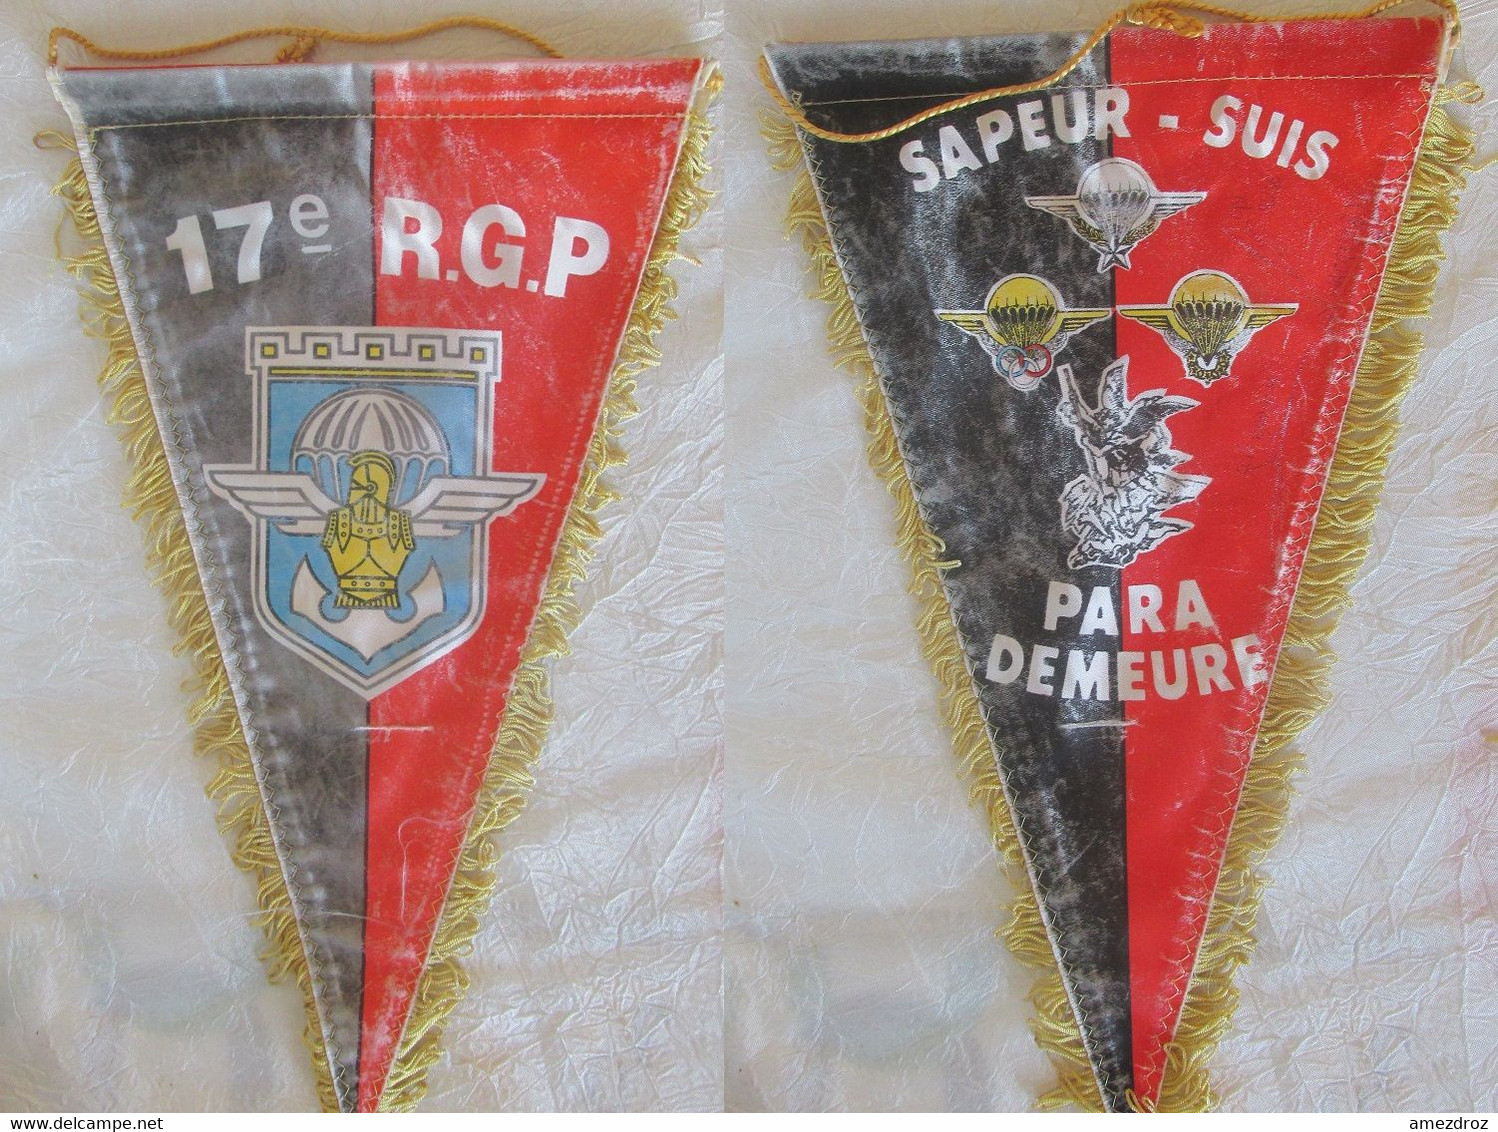 Fanion Militaire - 17e R.G.P Sapeur Suis Paras Demeure - Usé - Vlaggen